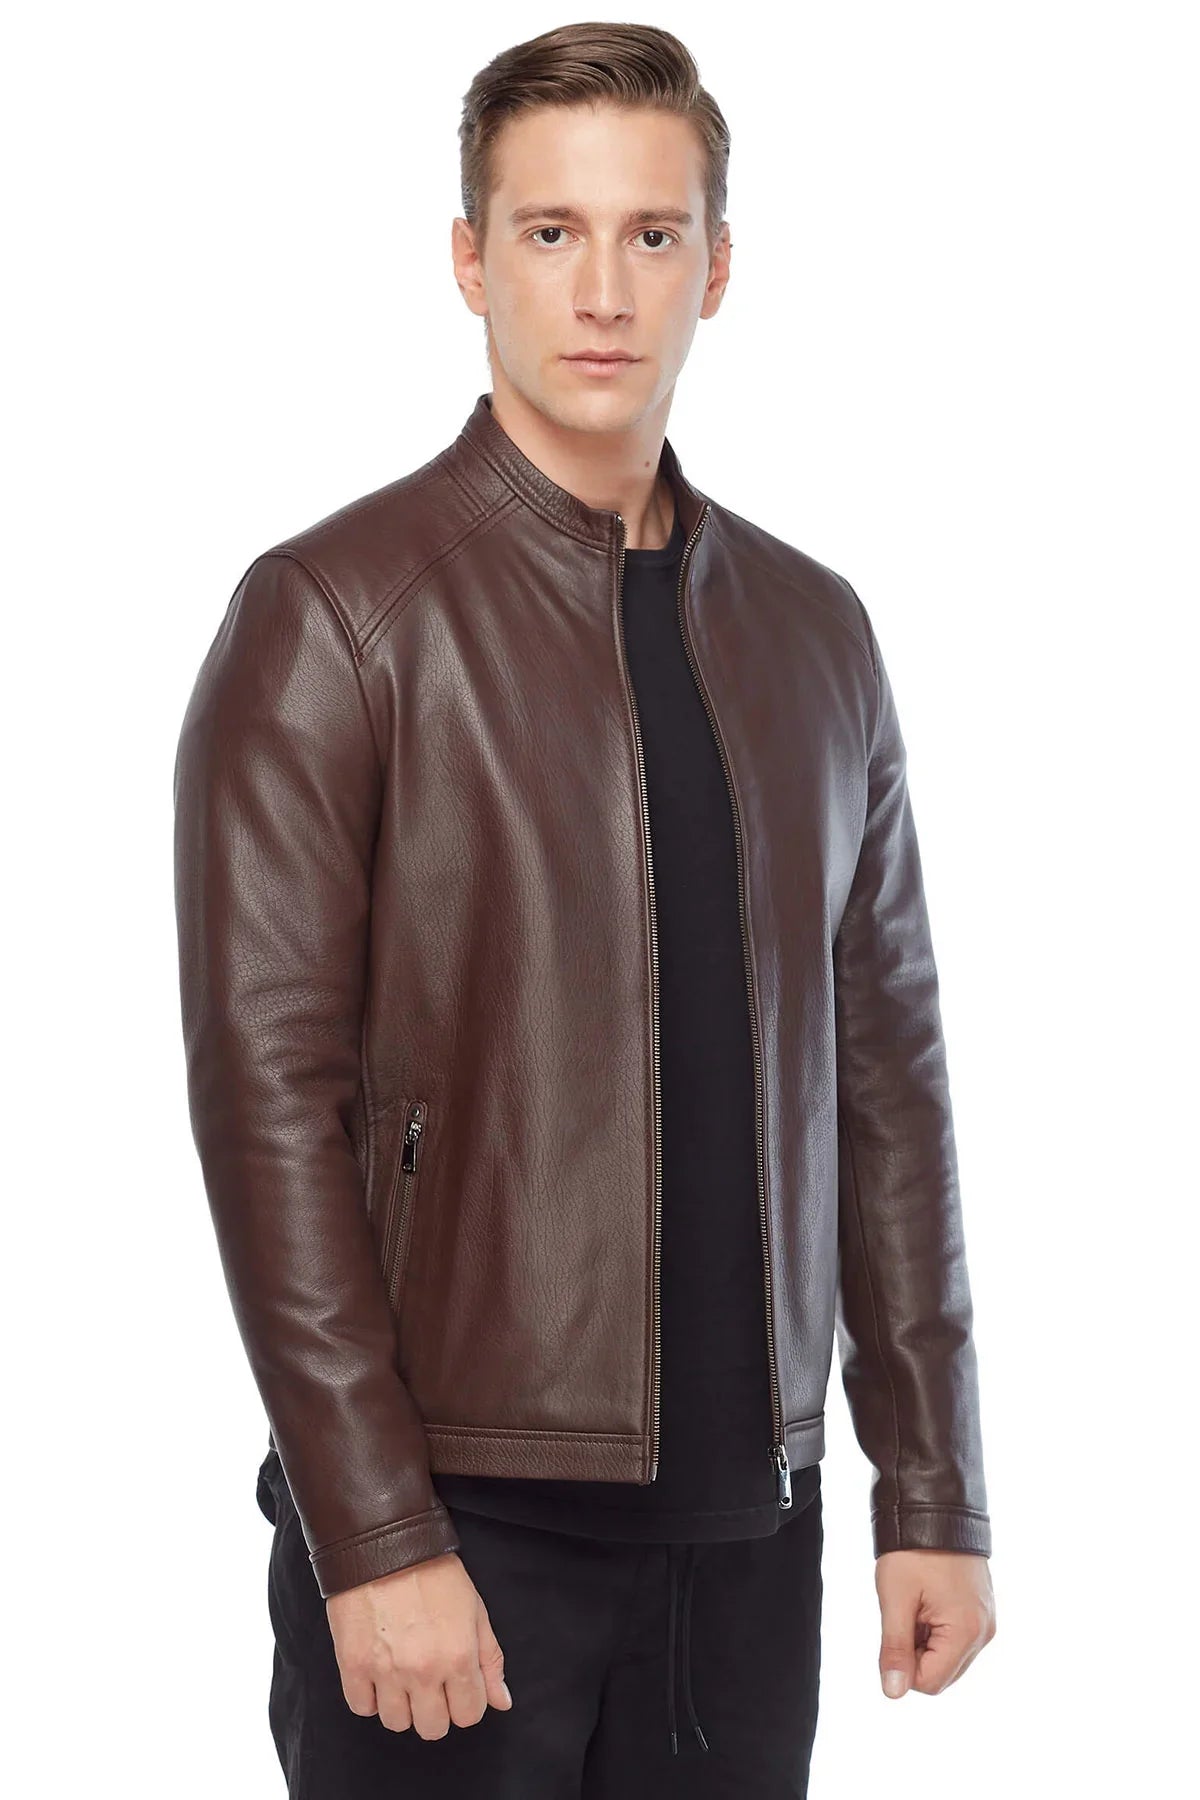 Plain Brown Leather Fashion Biker Jacket